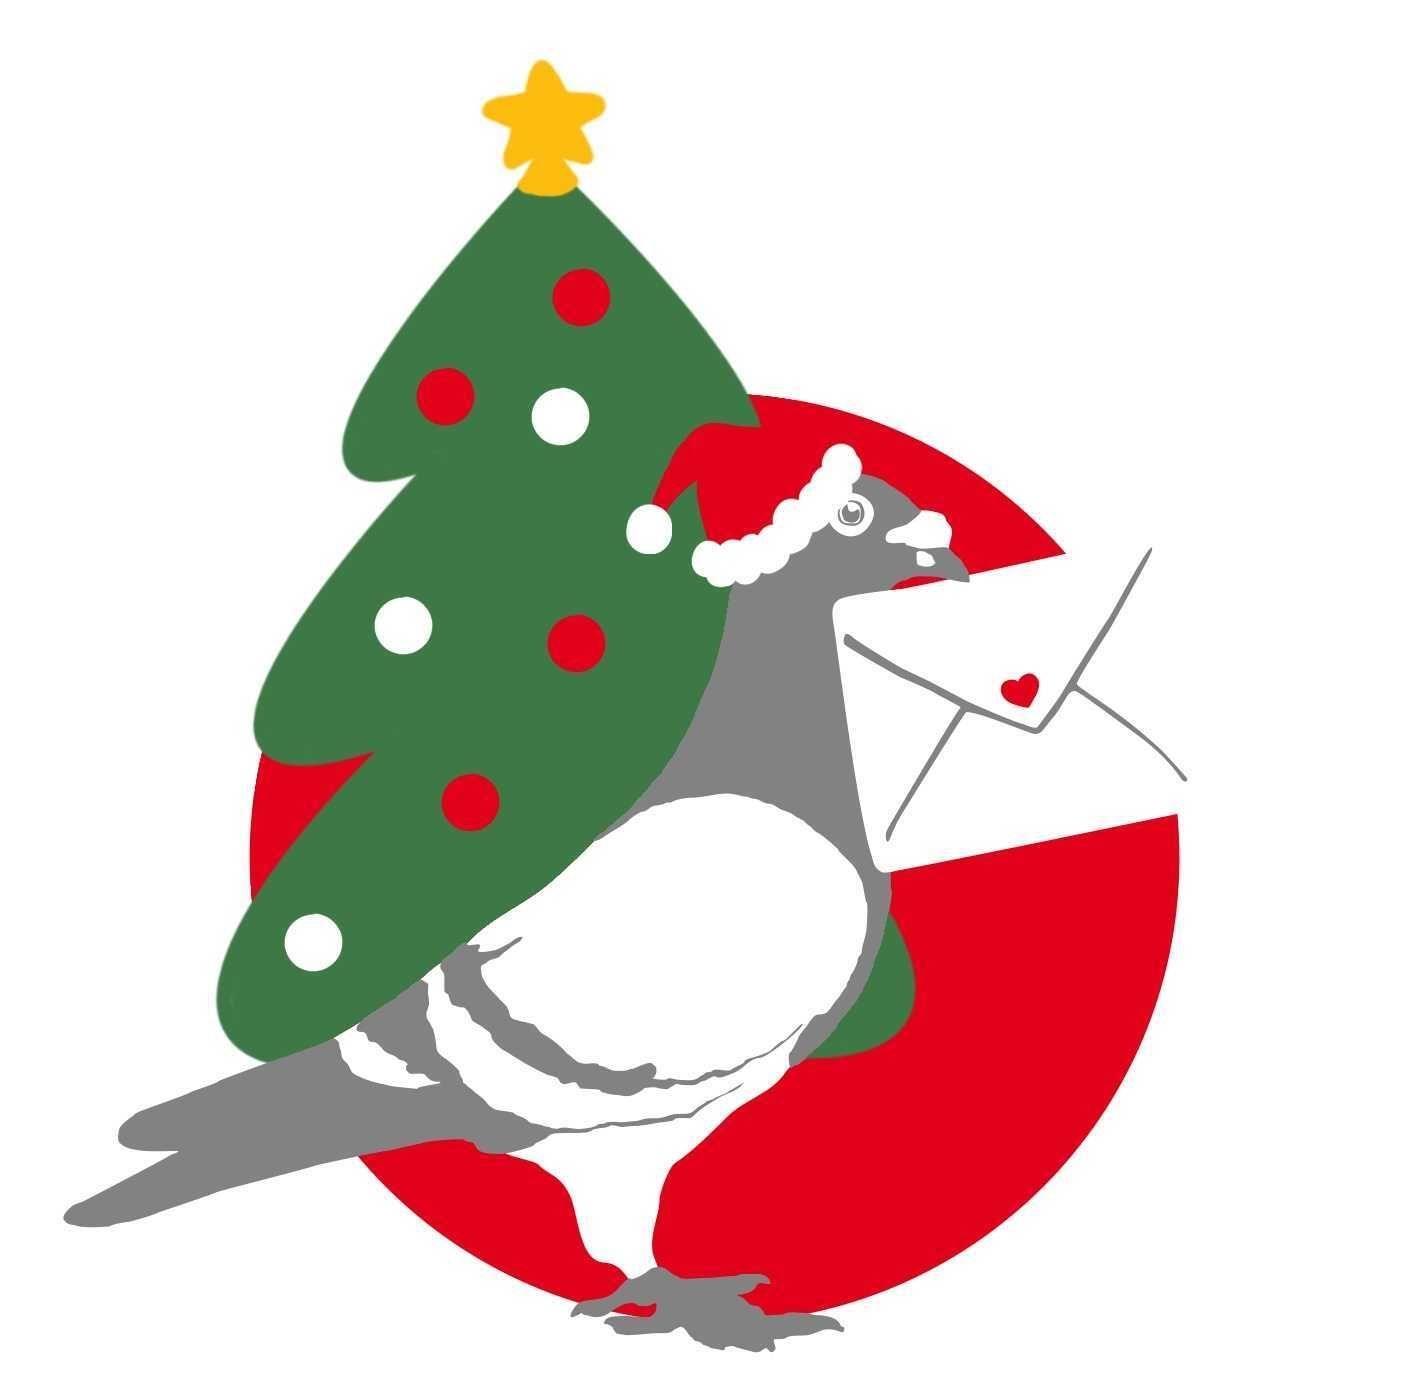 Taube mit Brief im Schnabel vor Weihnachtsbaum